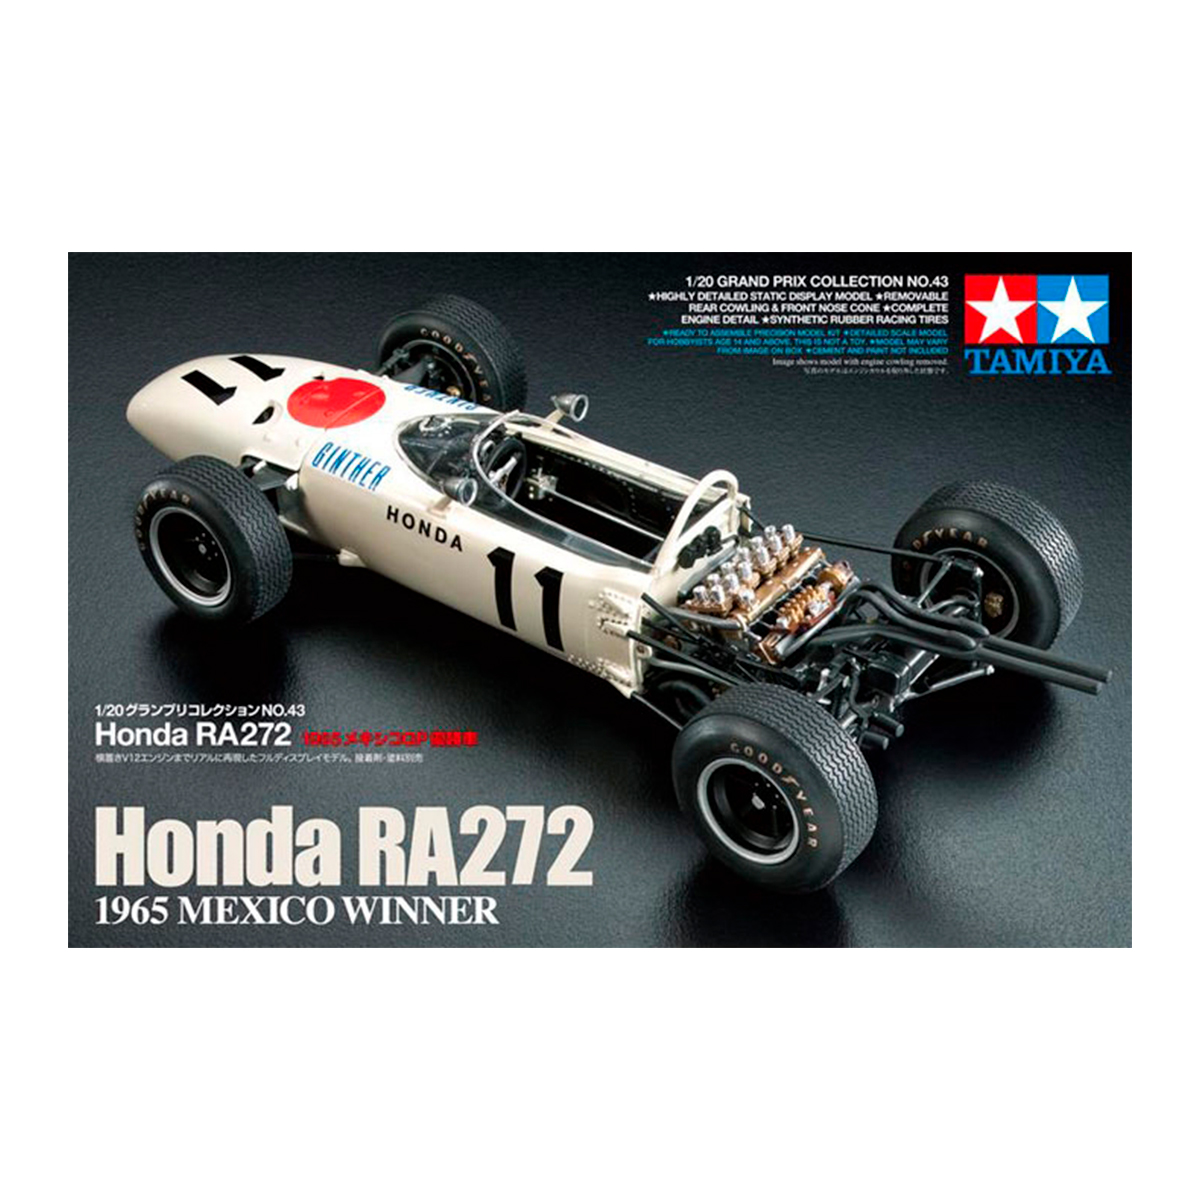 1/20 Honda RA272